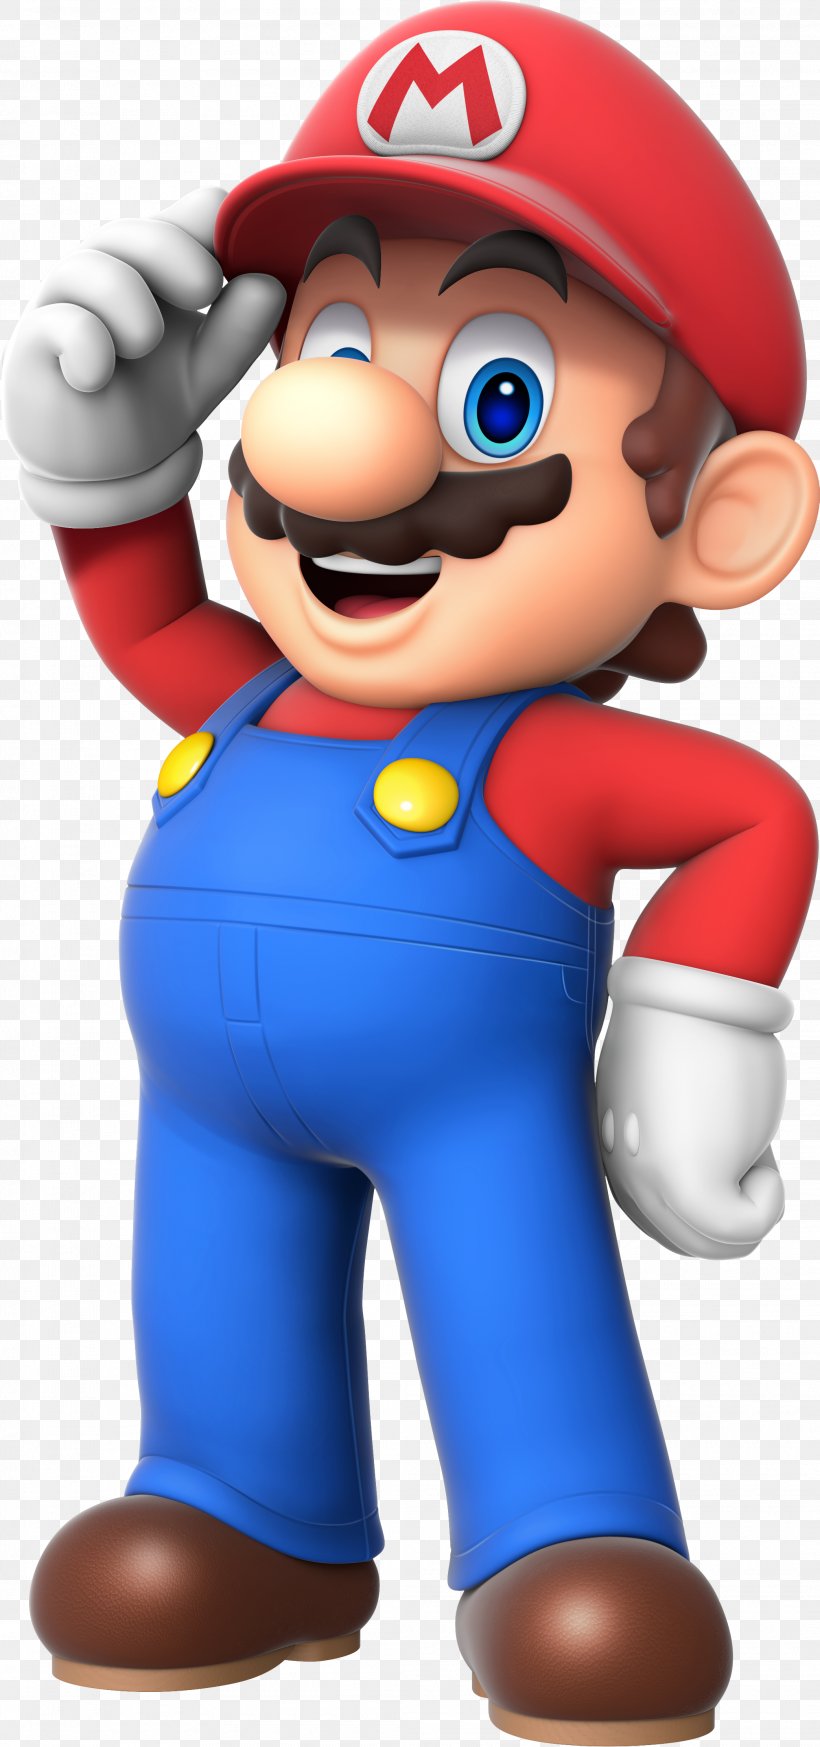 Super Mario Bros. Mario & Wario Luigi Rendering, PNG, 2085x4443px, 3d Rendering, Super Mario Bros, Action Figure, Blender, Cartoon Download Free